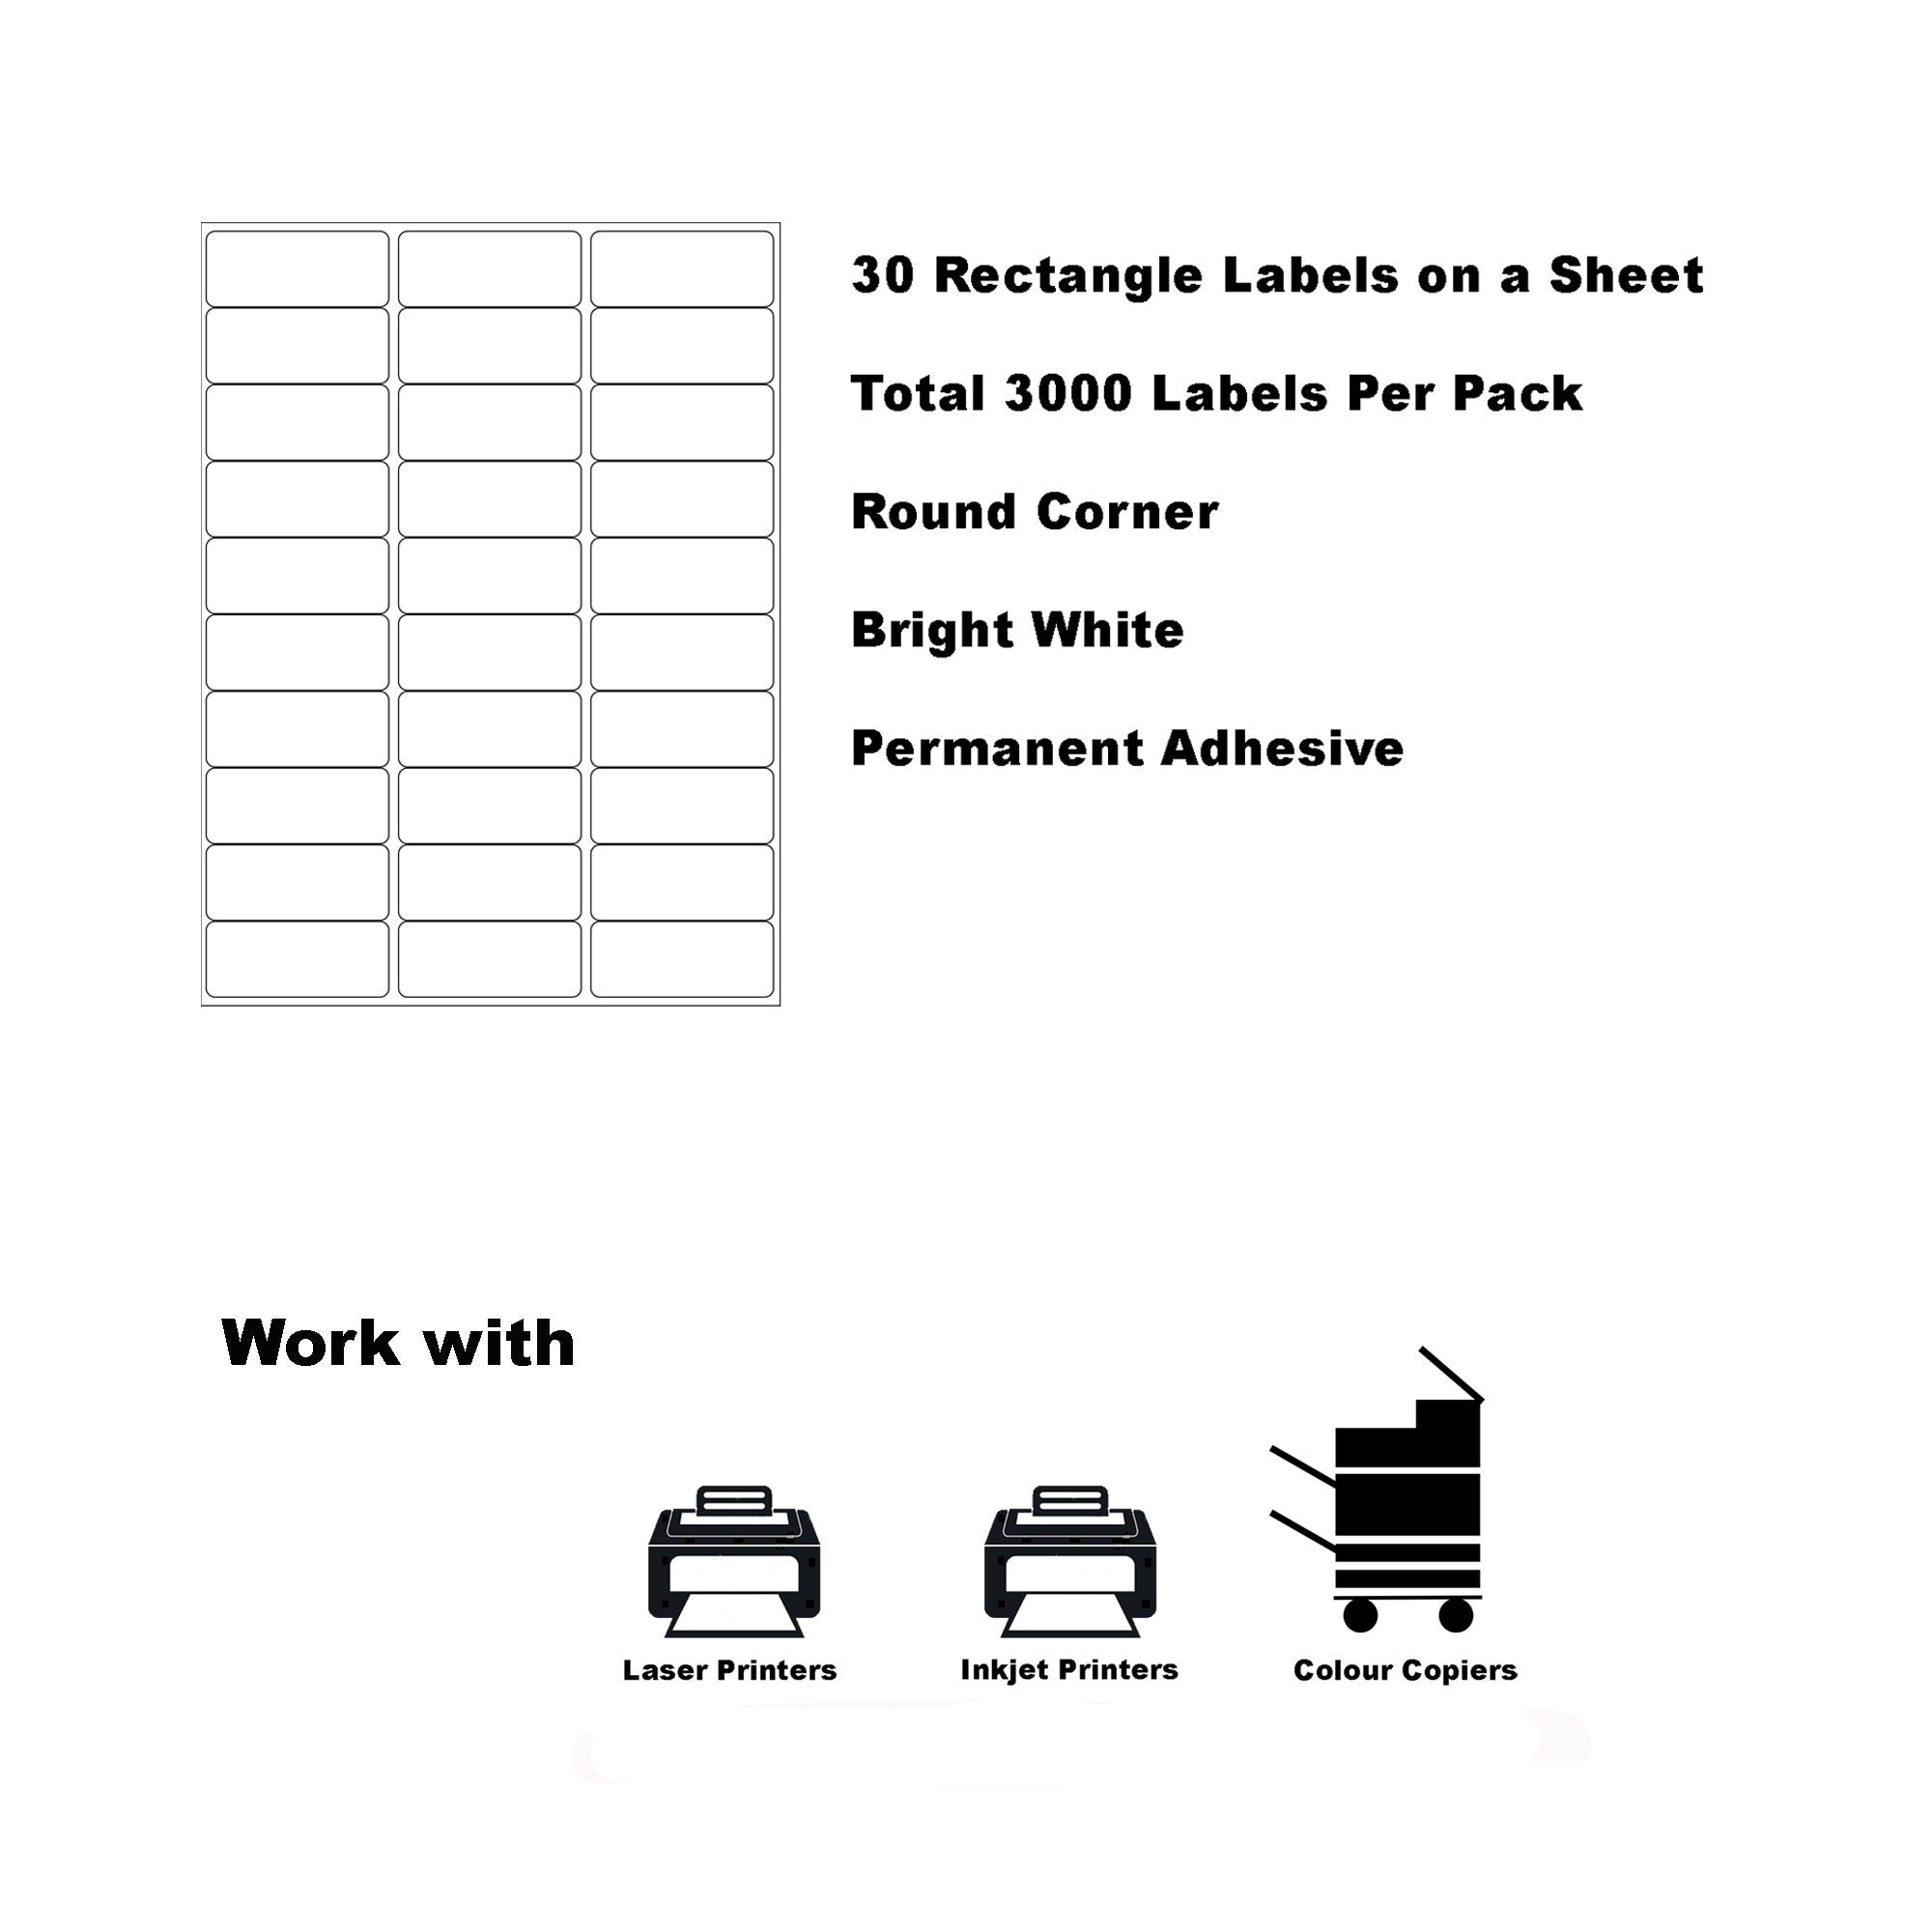 A4 Format Rectangle Labels 64 x 26.7mm 30 Labels Per Sheet-100 Sheets